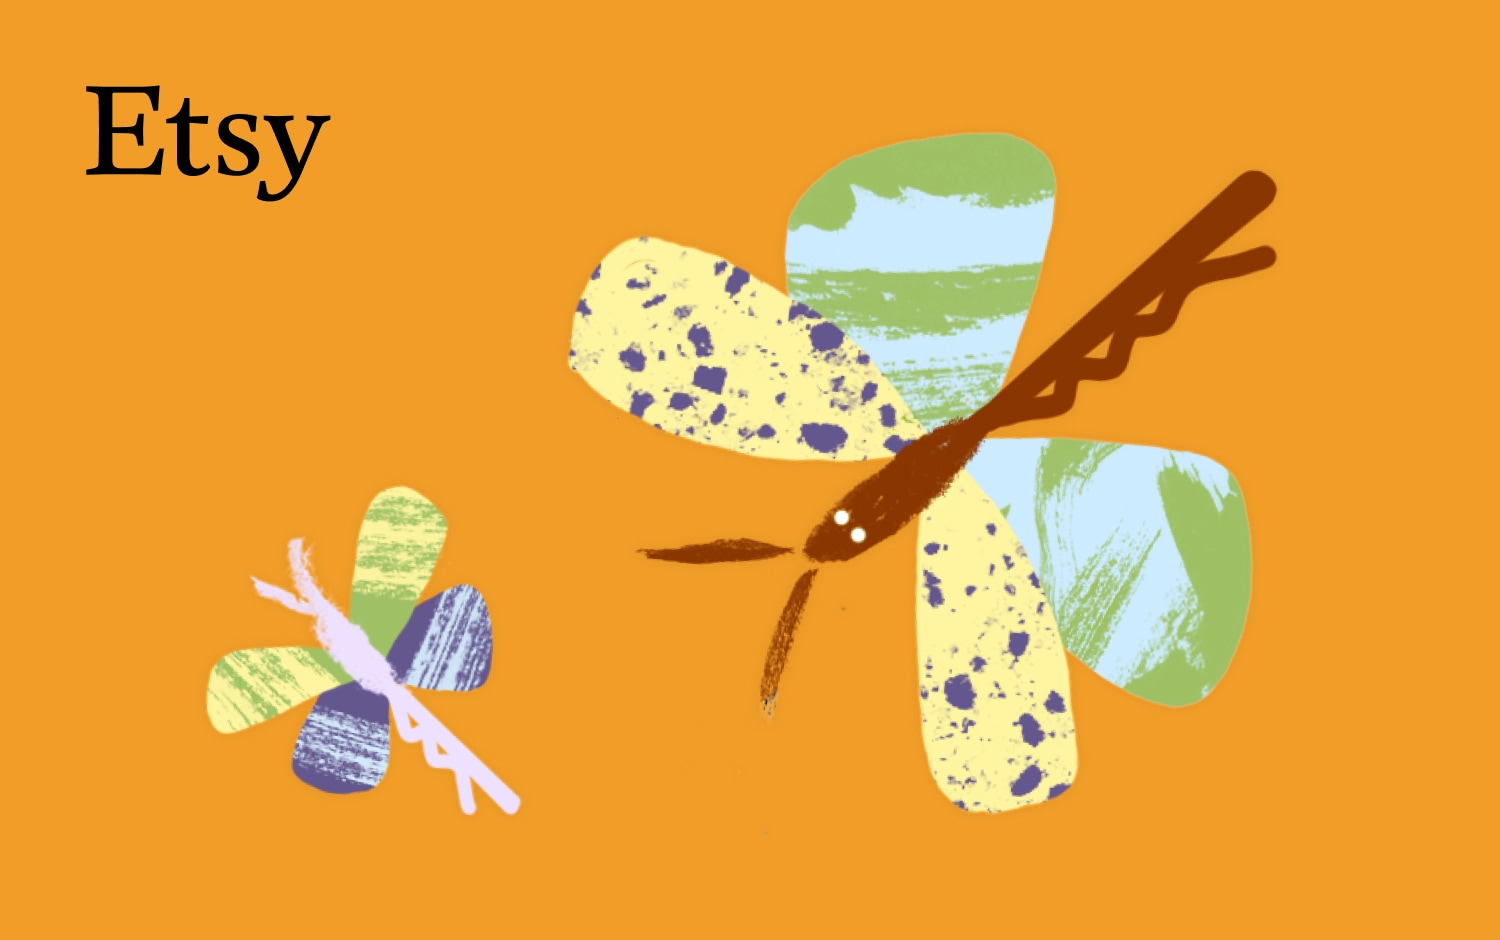 Ilustração de duas libelinhas abstratas com padrões nas asas sobre um fundo cor de laranja, uma maior em primeiro plano e uma mais pequena ligeiramente atrás. A cena passa-se sobre um fundo amarelo-escuro com um logótipo Etsy em letra preta no canto superior esquerdo.